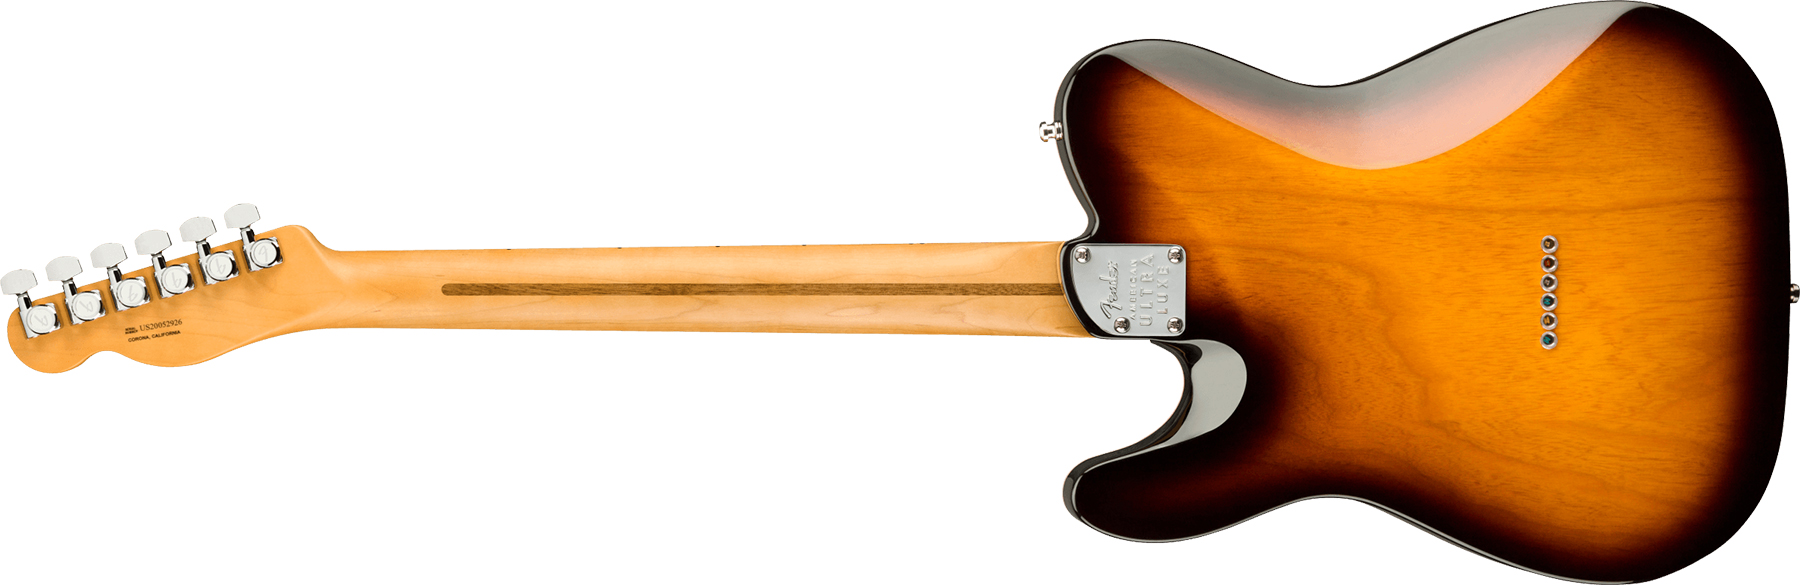 Fender Tele American Ultra Luxe Usa Mn +etui - 2-color Sunburst - Guitarra eléctrica con forma de tel - Variation 1